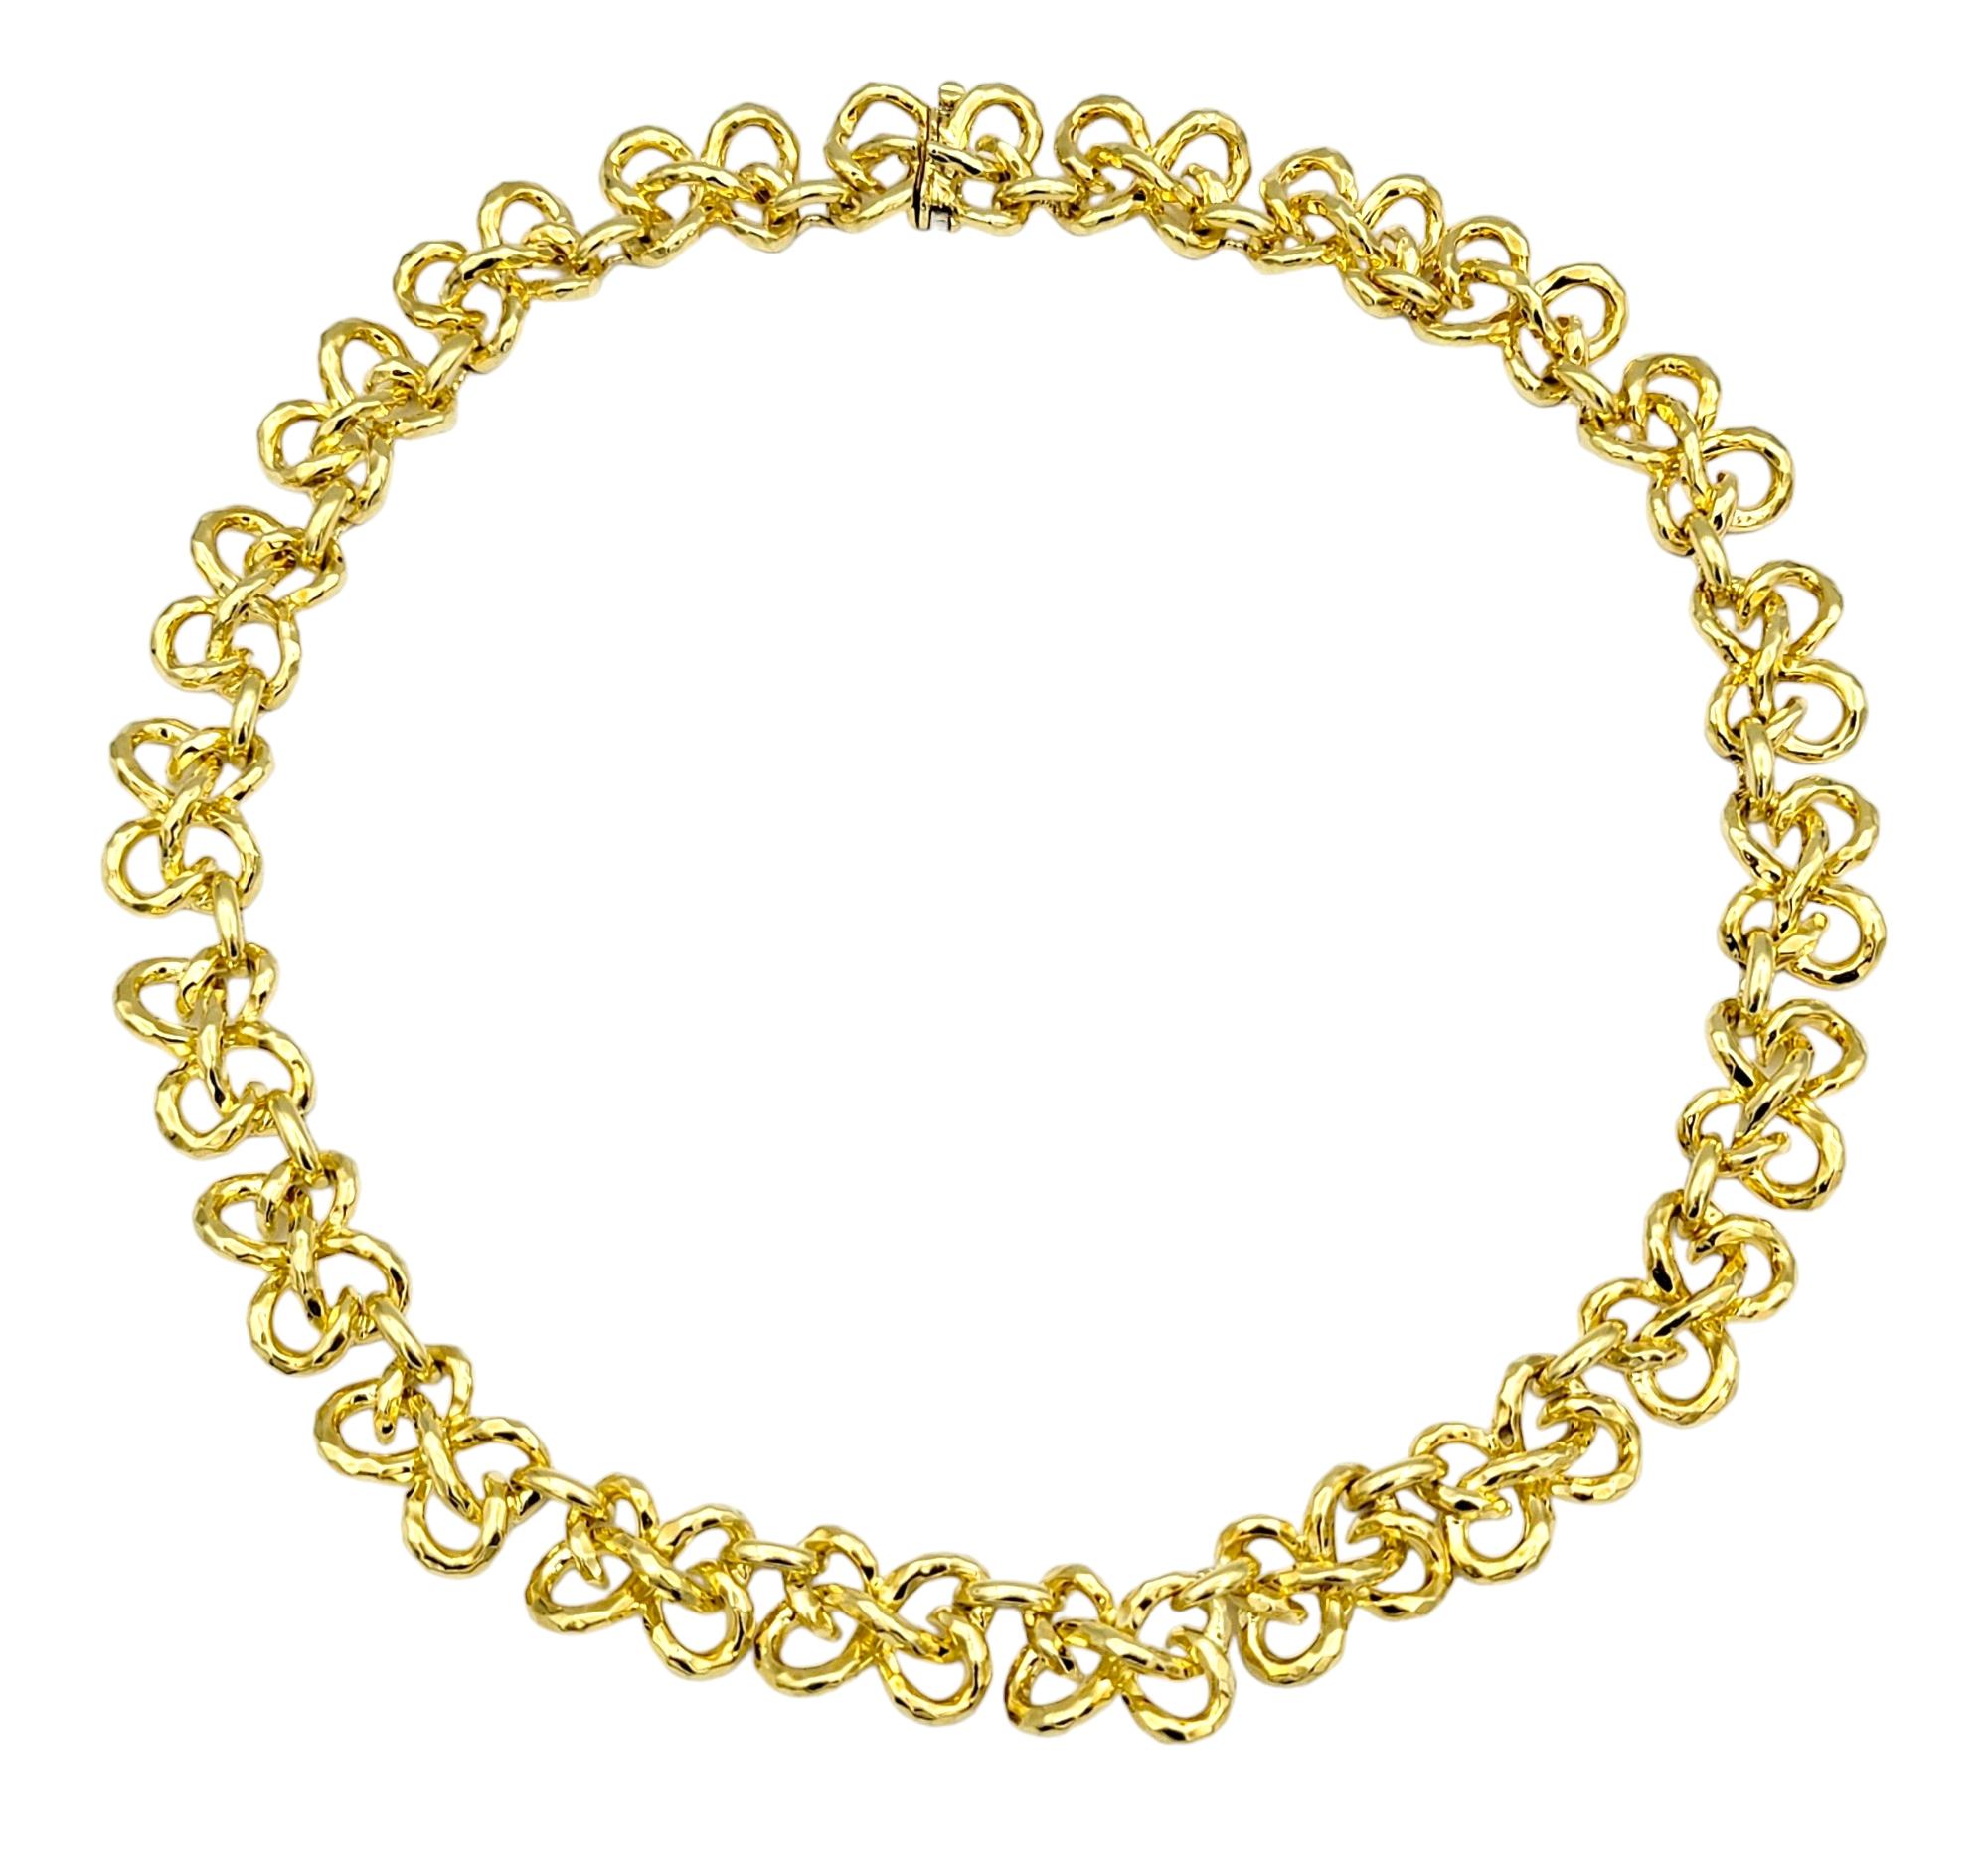 Confectionné avec un art exquis, ce collier Henry Dunay présente un fascinant motif torsadé, rappelant des rubans délicatement entrelacés. Méticuleusement façonné dans de l'or jaune 18 carats rayonnant, chaque torsion du ruban d'or s'enchaîne sans